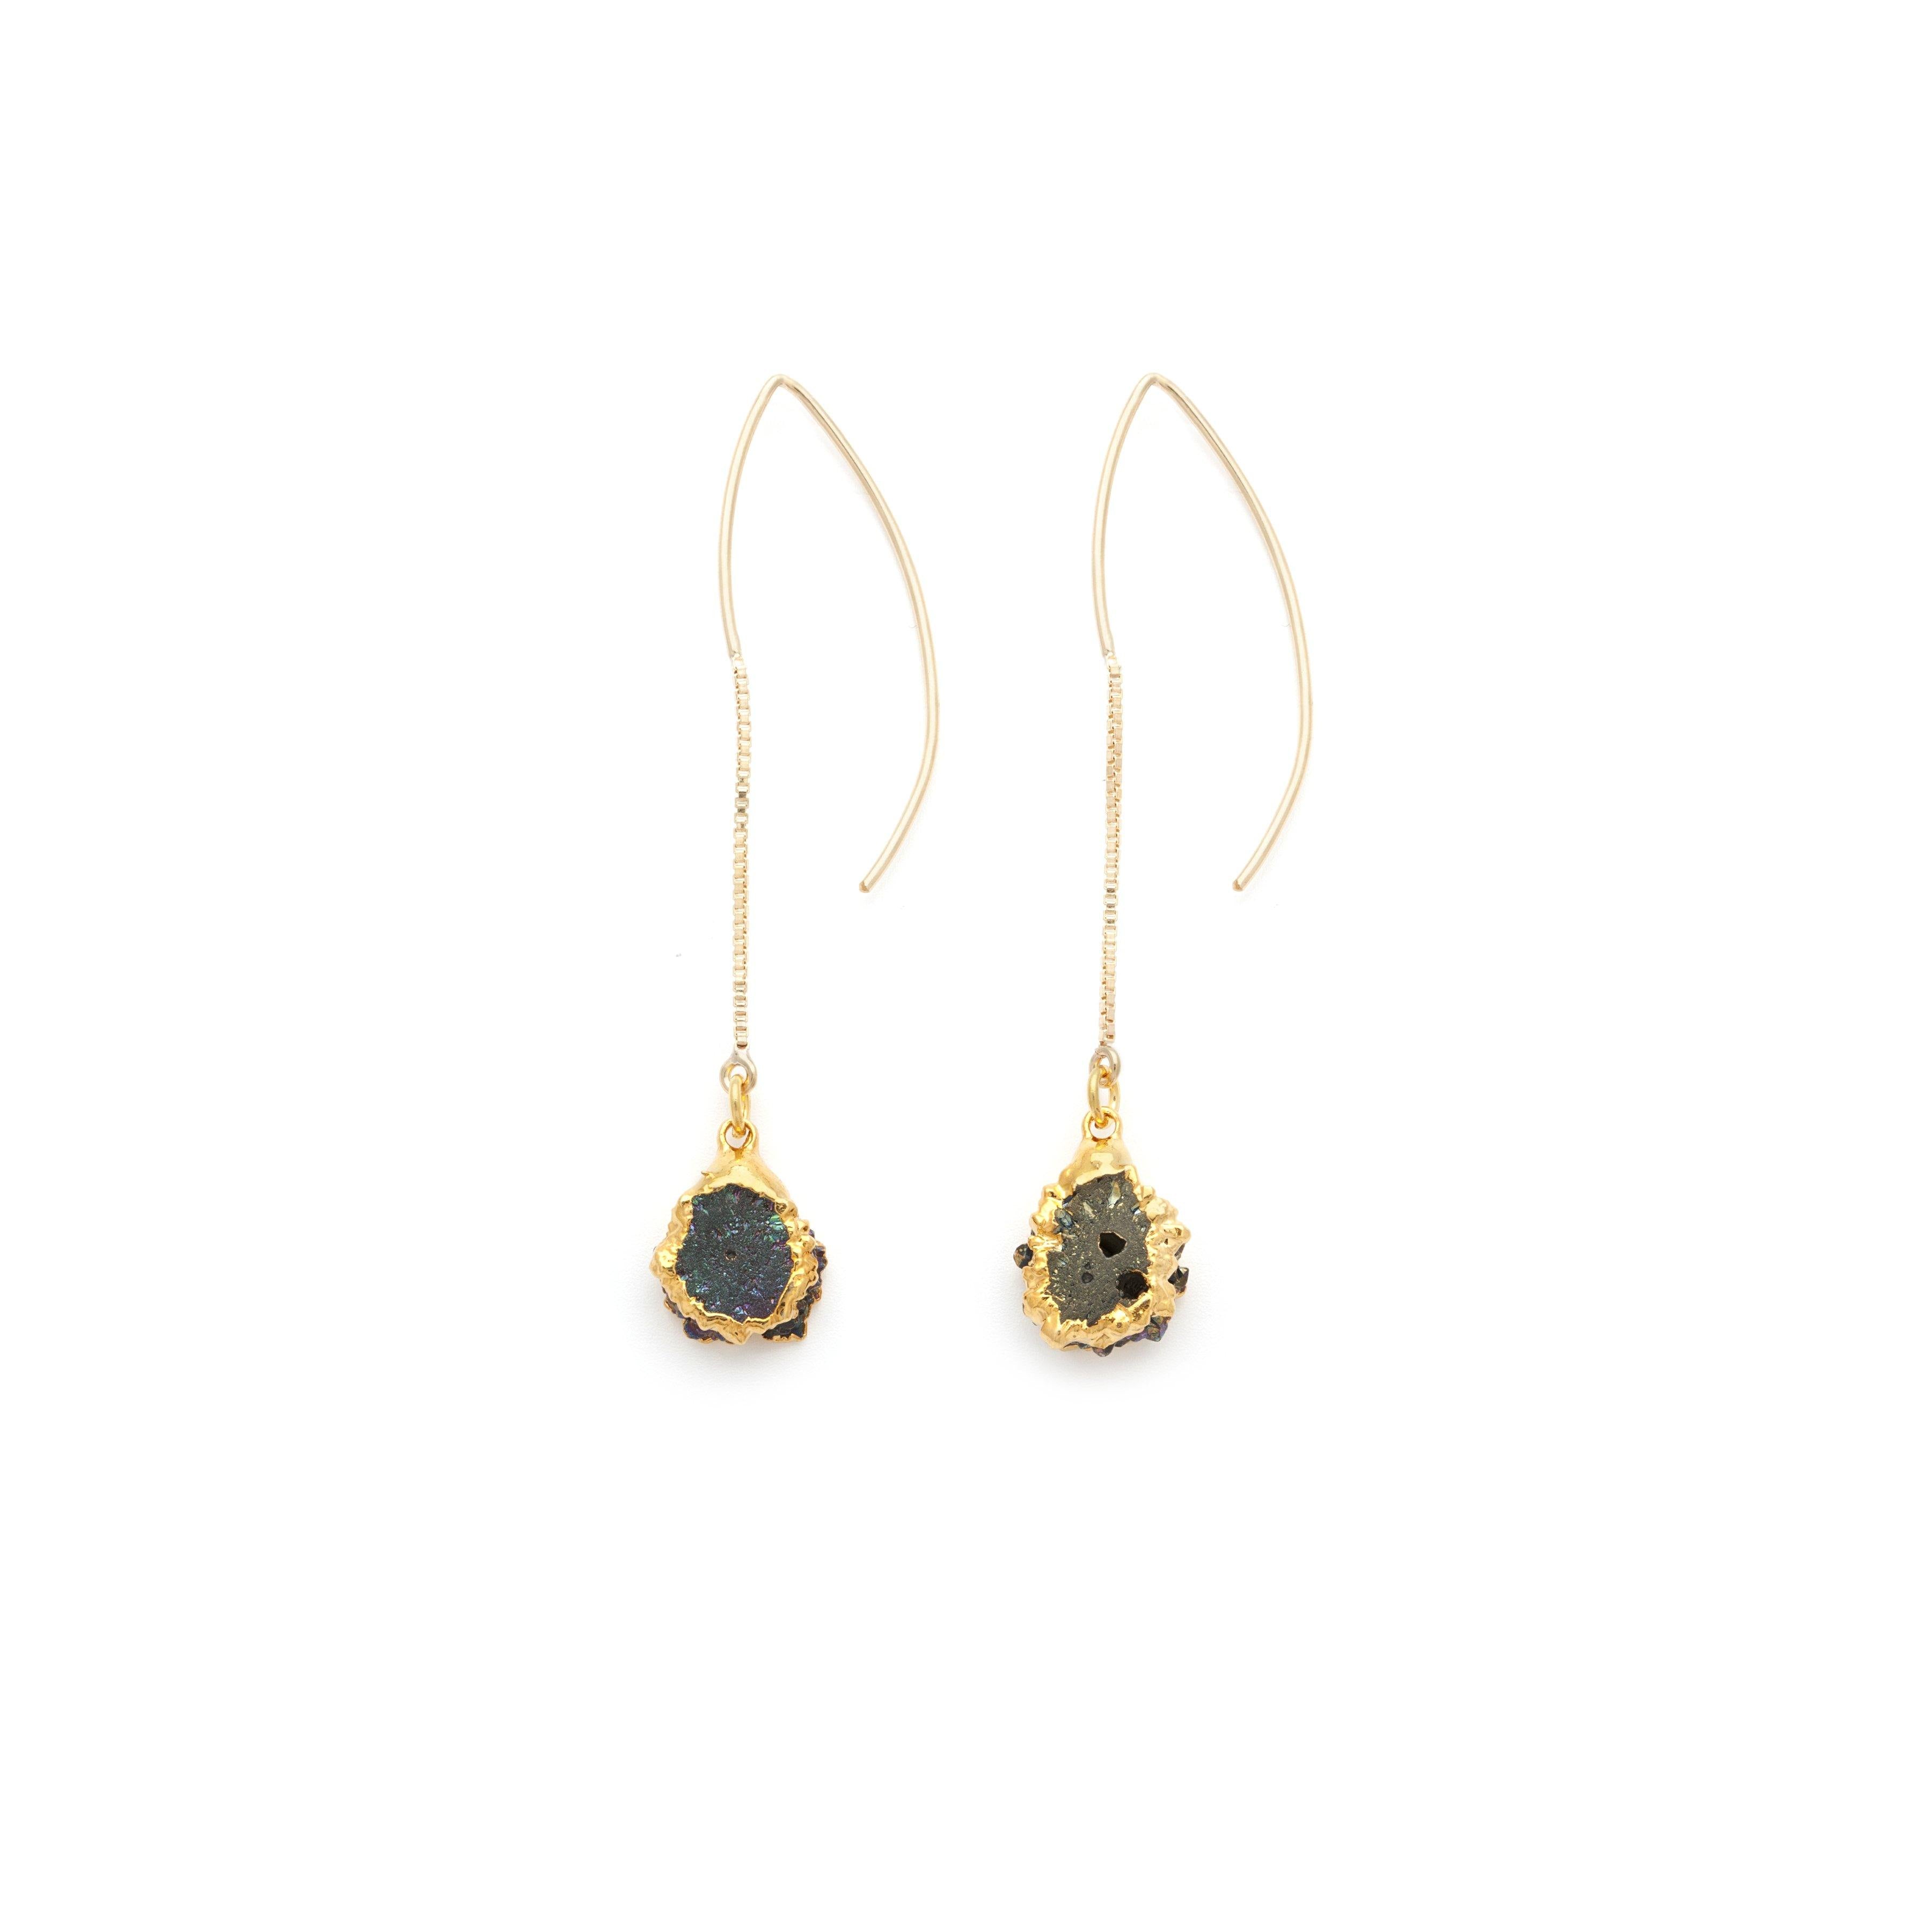 Double-sided Pyrite Gold Earrings - Irit Sorokin Designs Jewelry